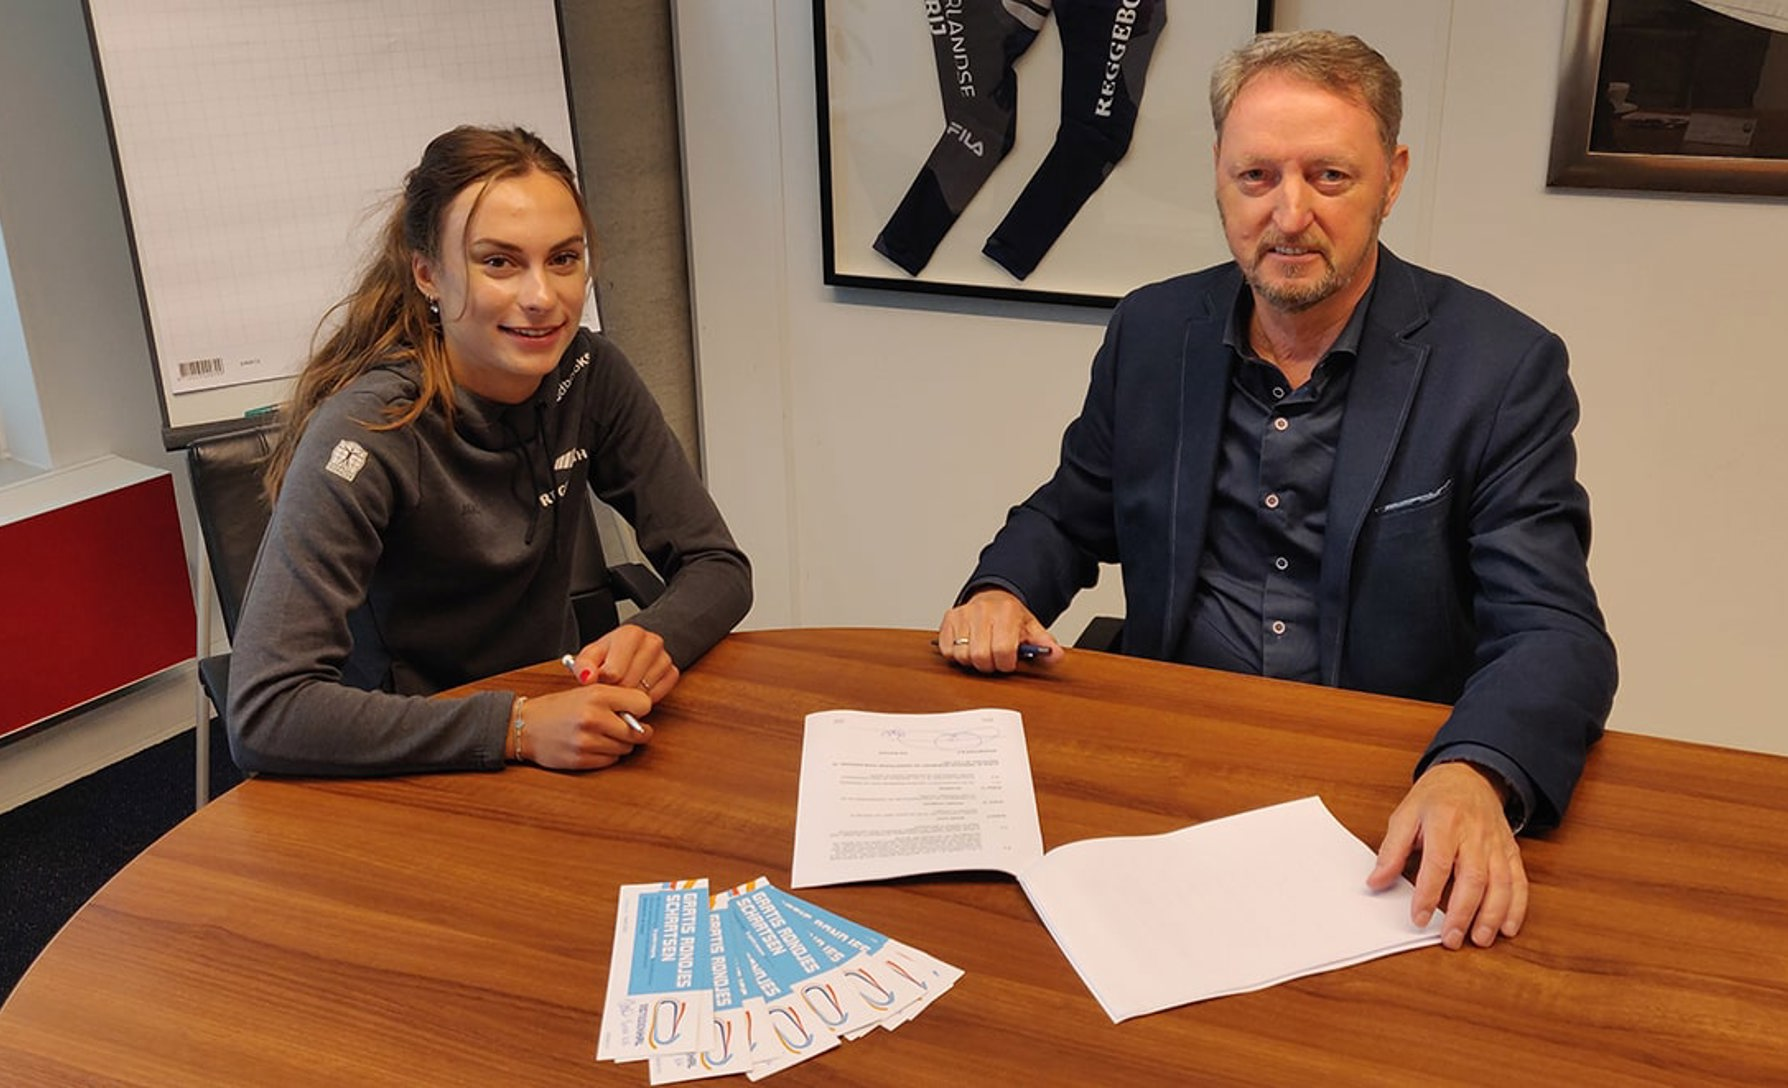 Lume Paulusma van Speedbooks® verlengt contract met schaatstalent Femke Kok